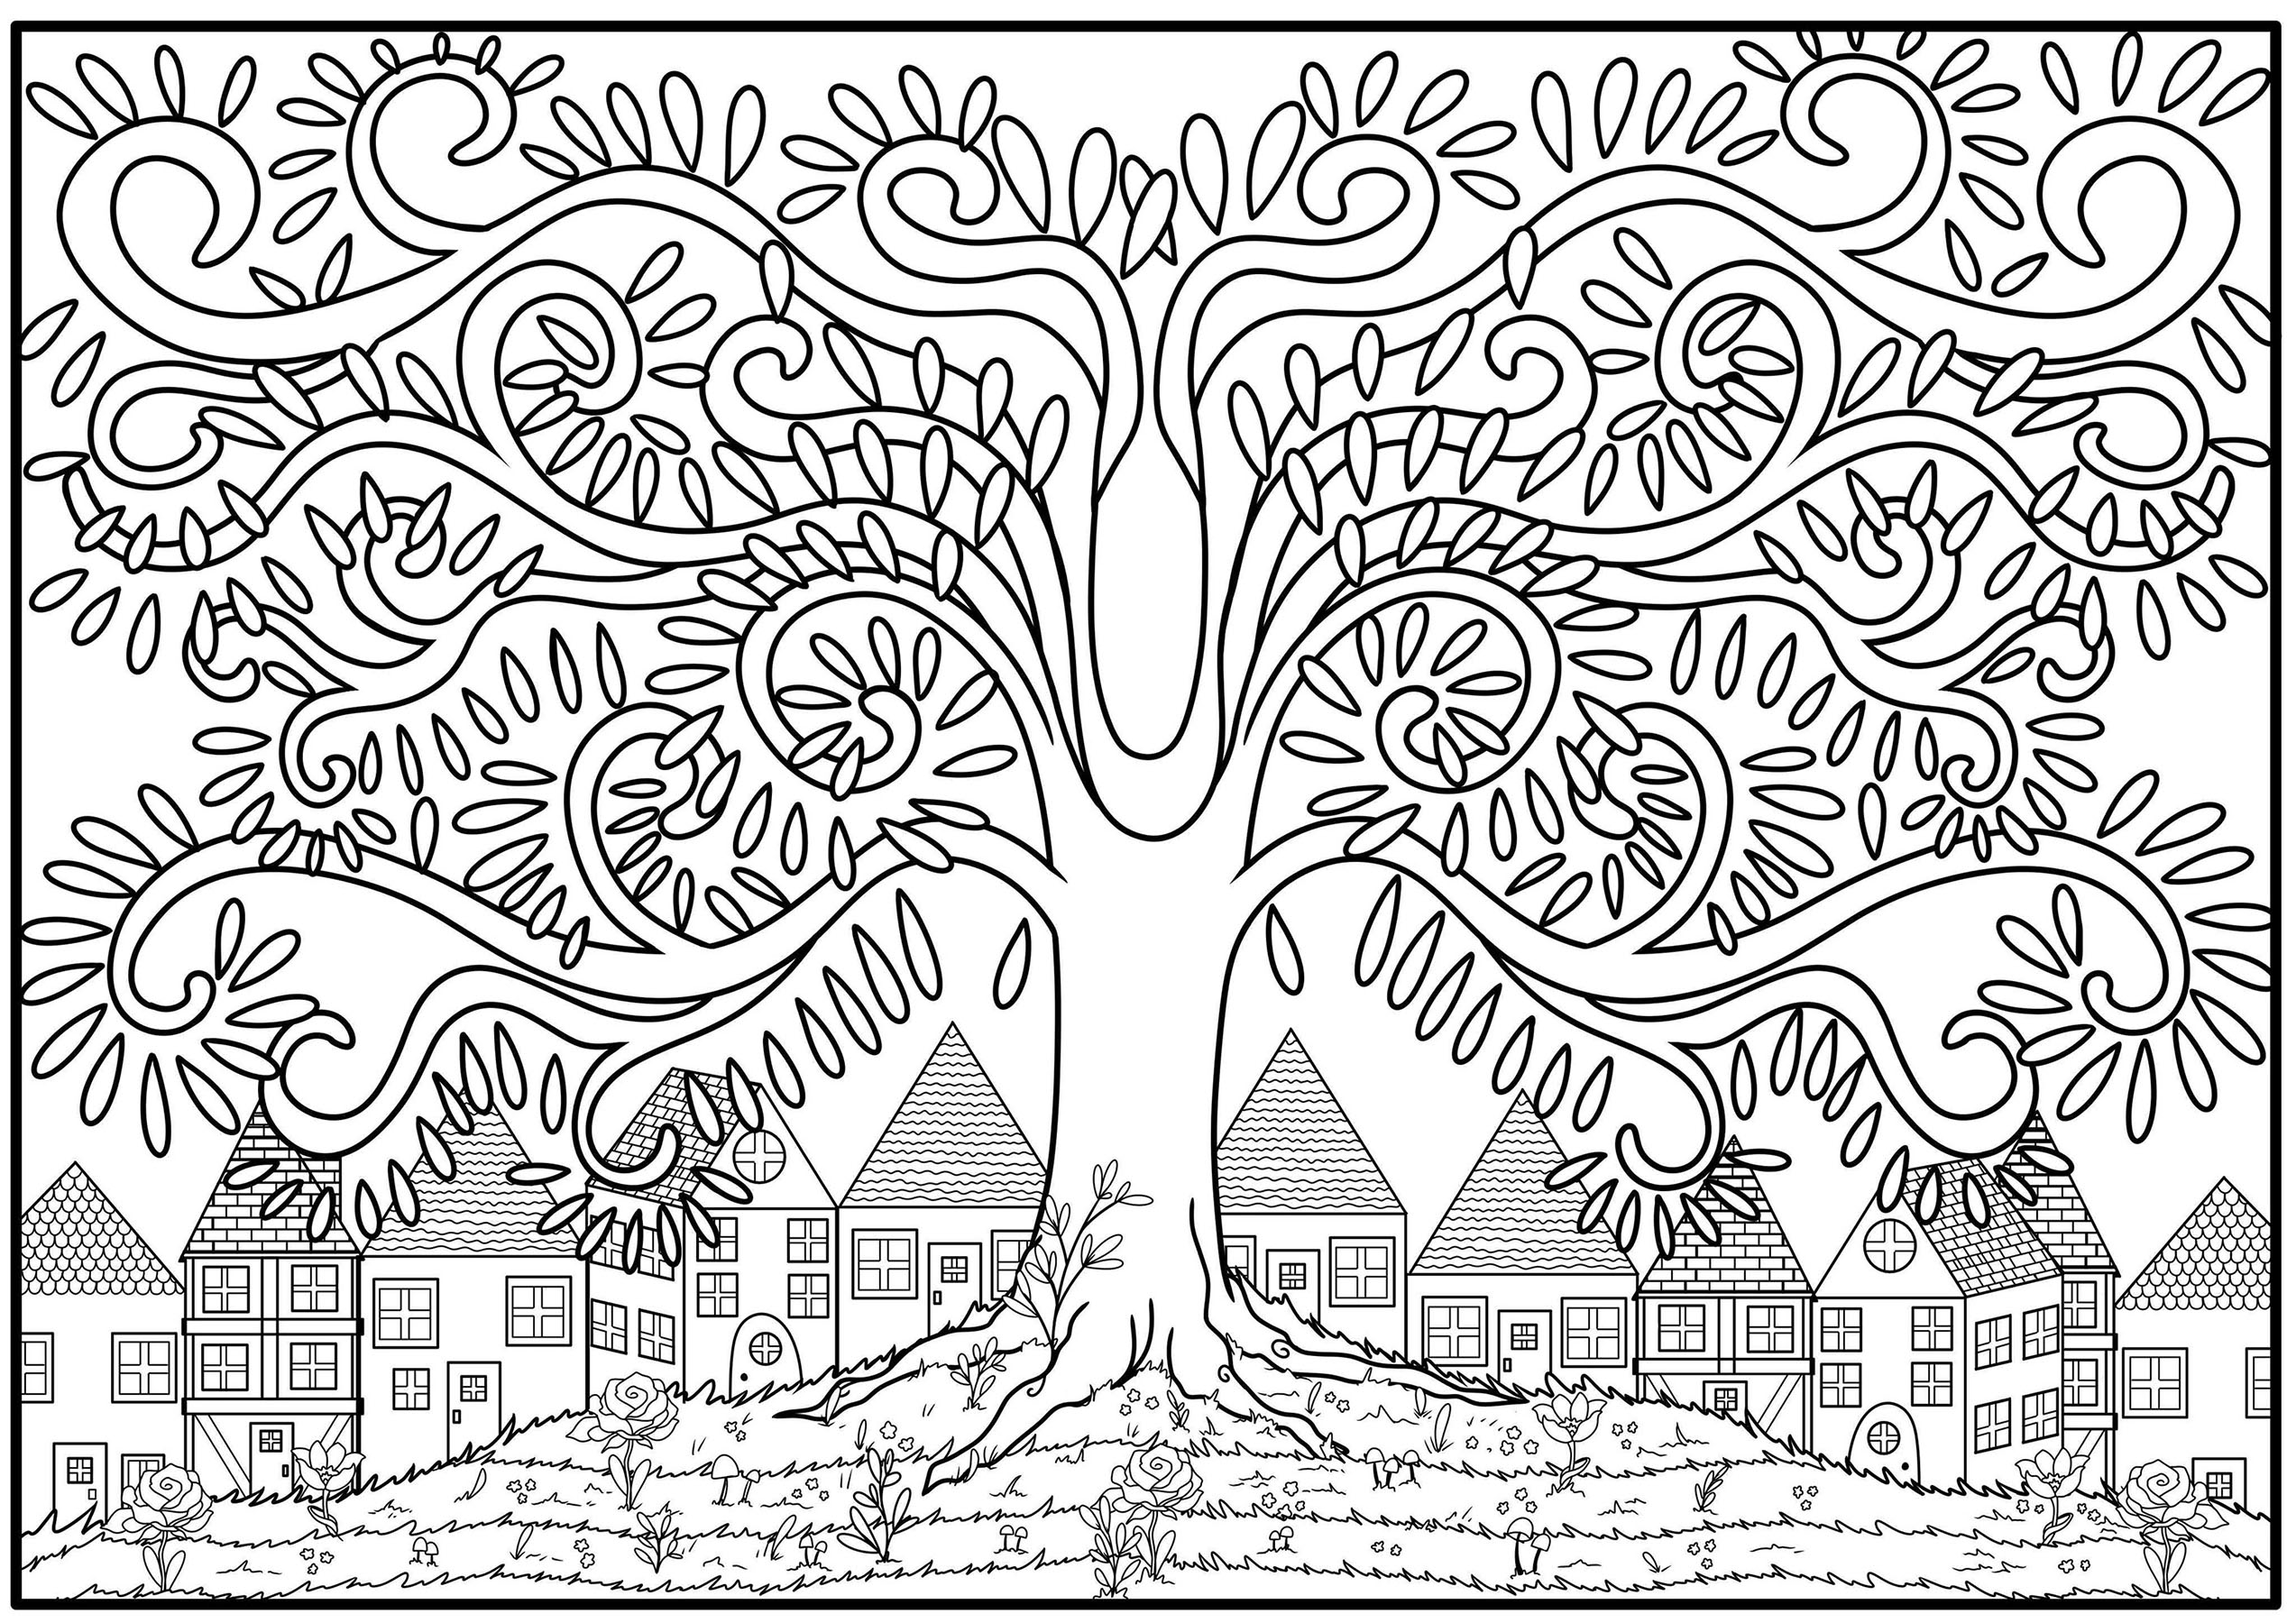 Página para colorear de un árbol con rama en forma de arabesco, en lo alto de una colina florida con casas al fondo, Artista : Océane D